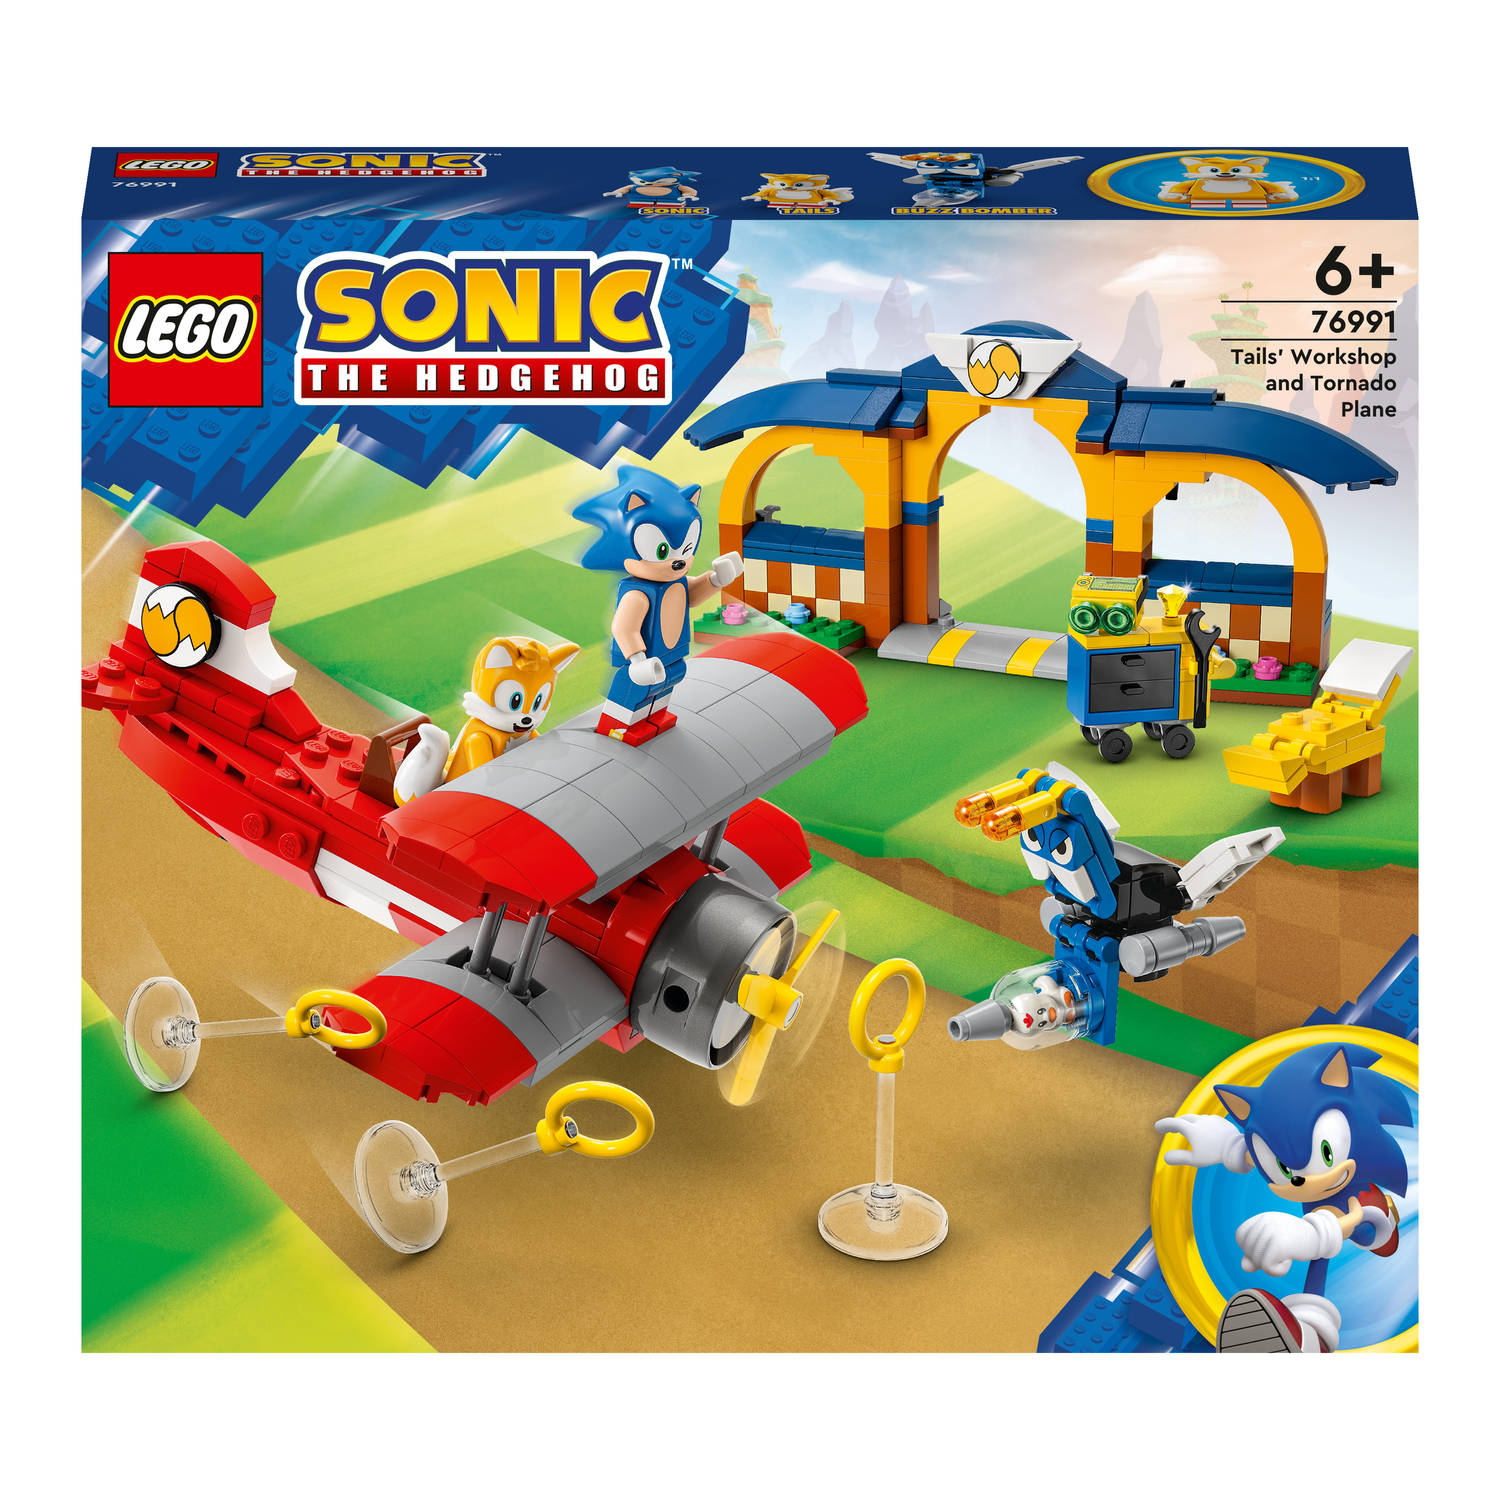 LEGOÂ® Sonic the Hedgehog 76991 Tails' werkplaats en Tornado vliegtuig